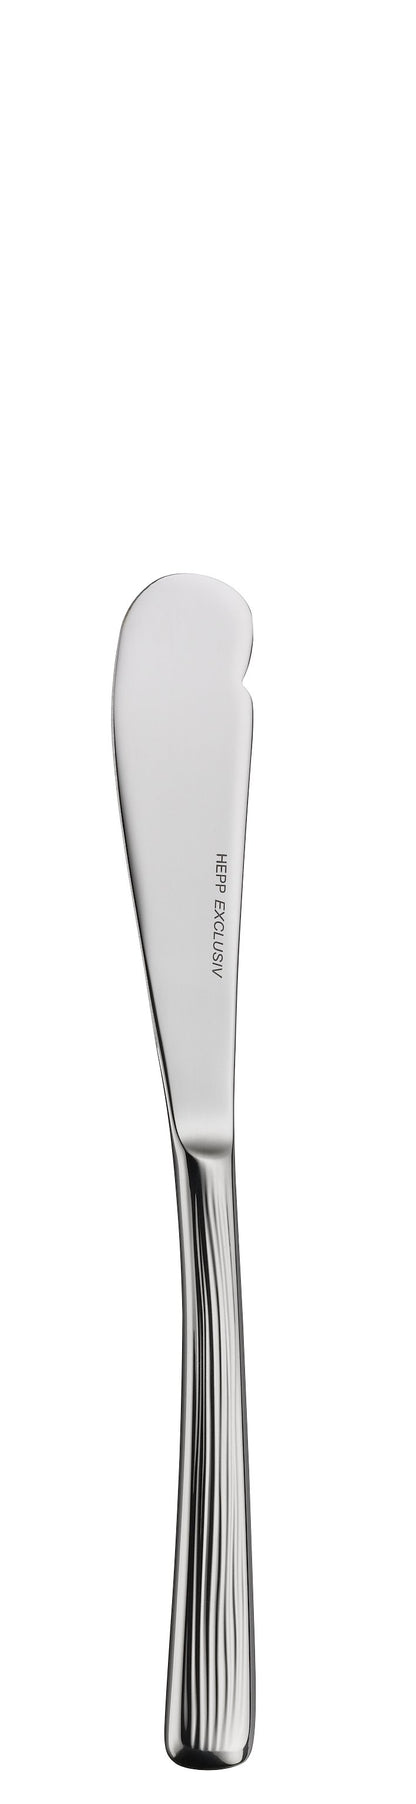 Butter knife MB MESCANA 170mm